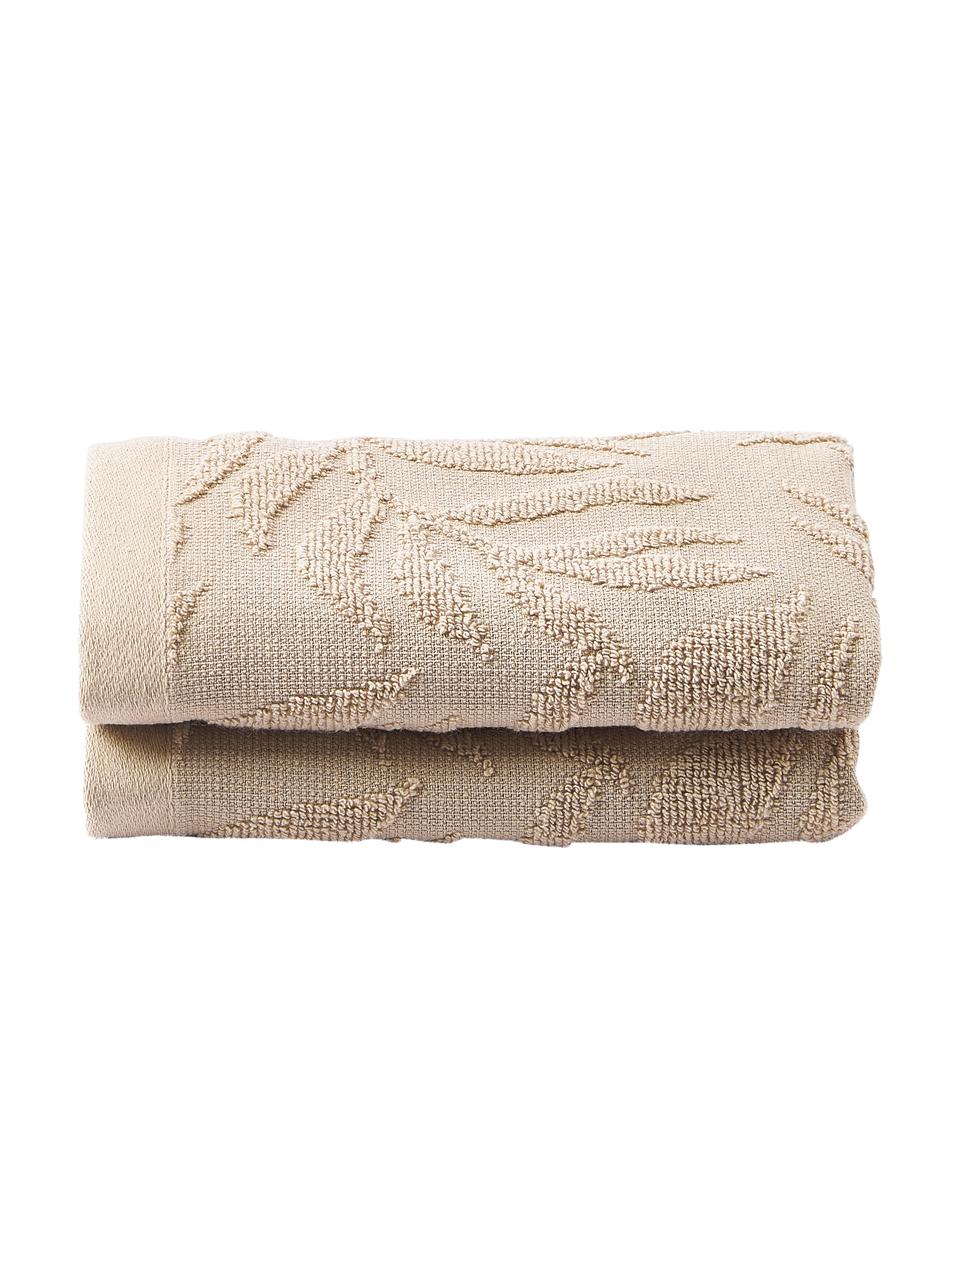 Ręcznik z bawełny Leaf, różne rozmiary, Beżowy, Ręcznik, S 30 x D 50 cm, 2 szt.